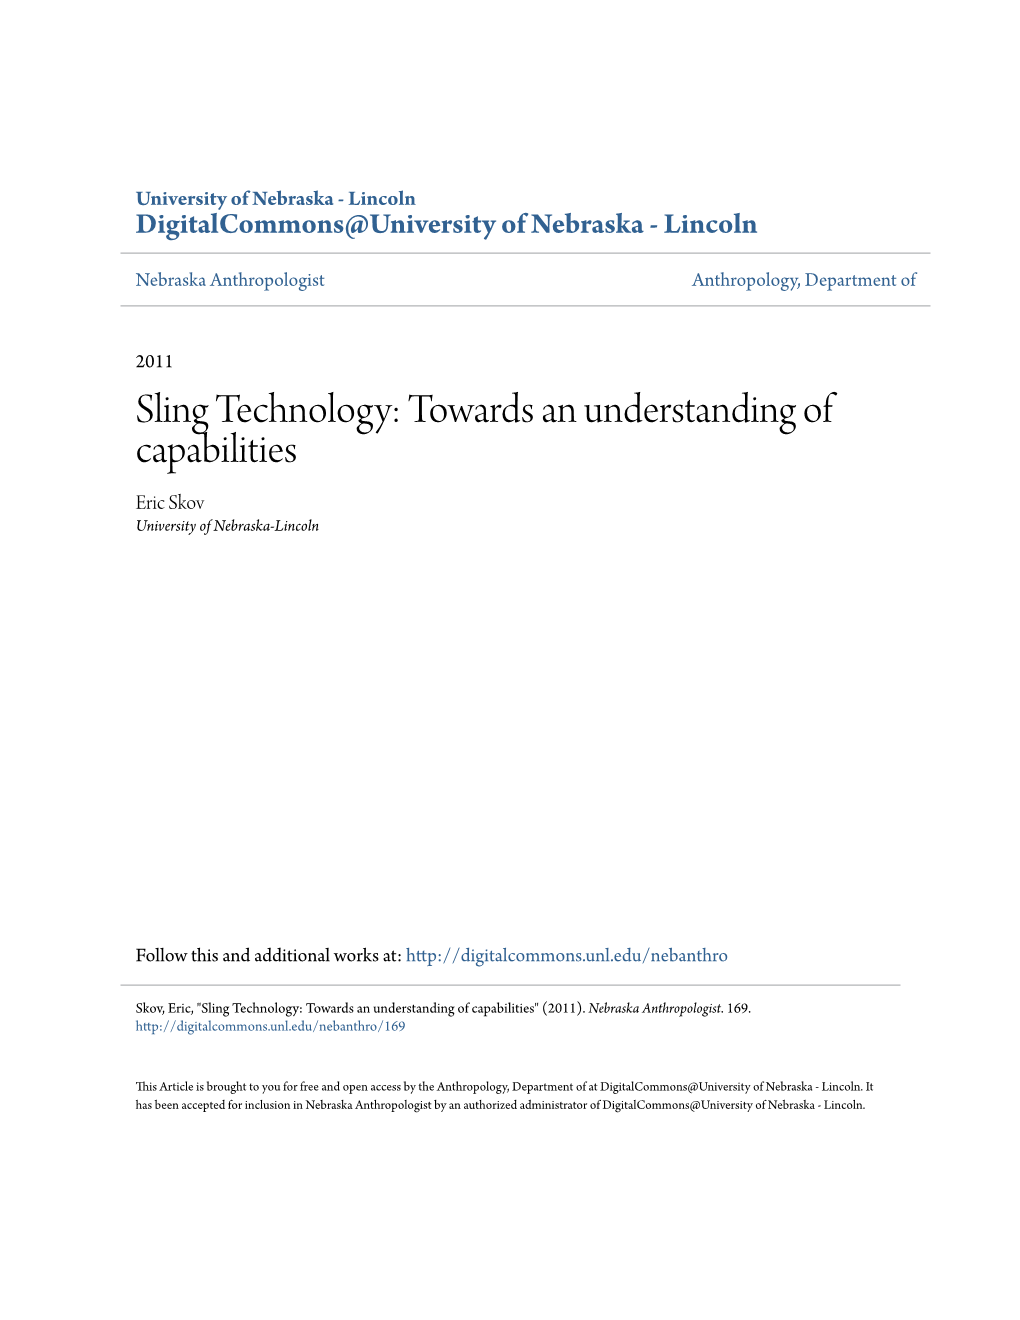 Sling Technology: Towards an Understanding of Capabilities Eric Skov University of Nebraska-Lincoln